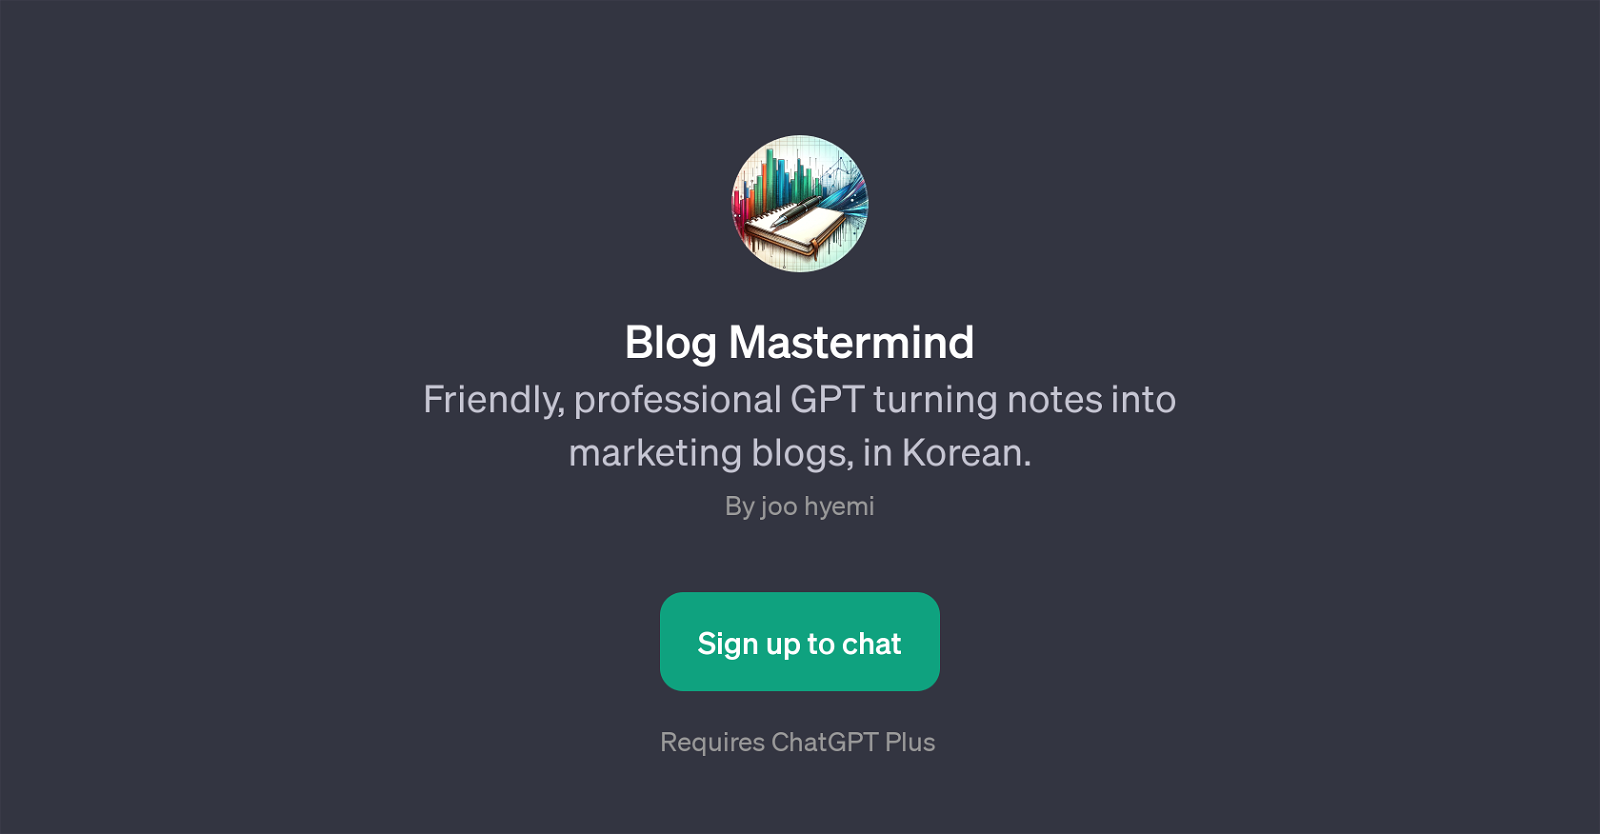 Blog Mastermind website